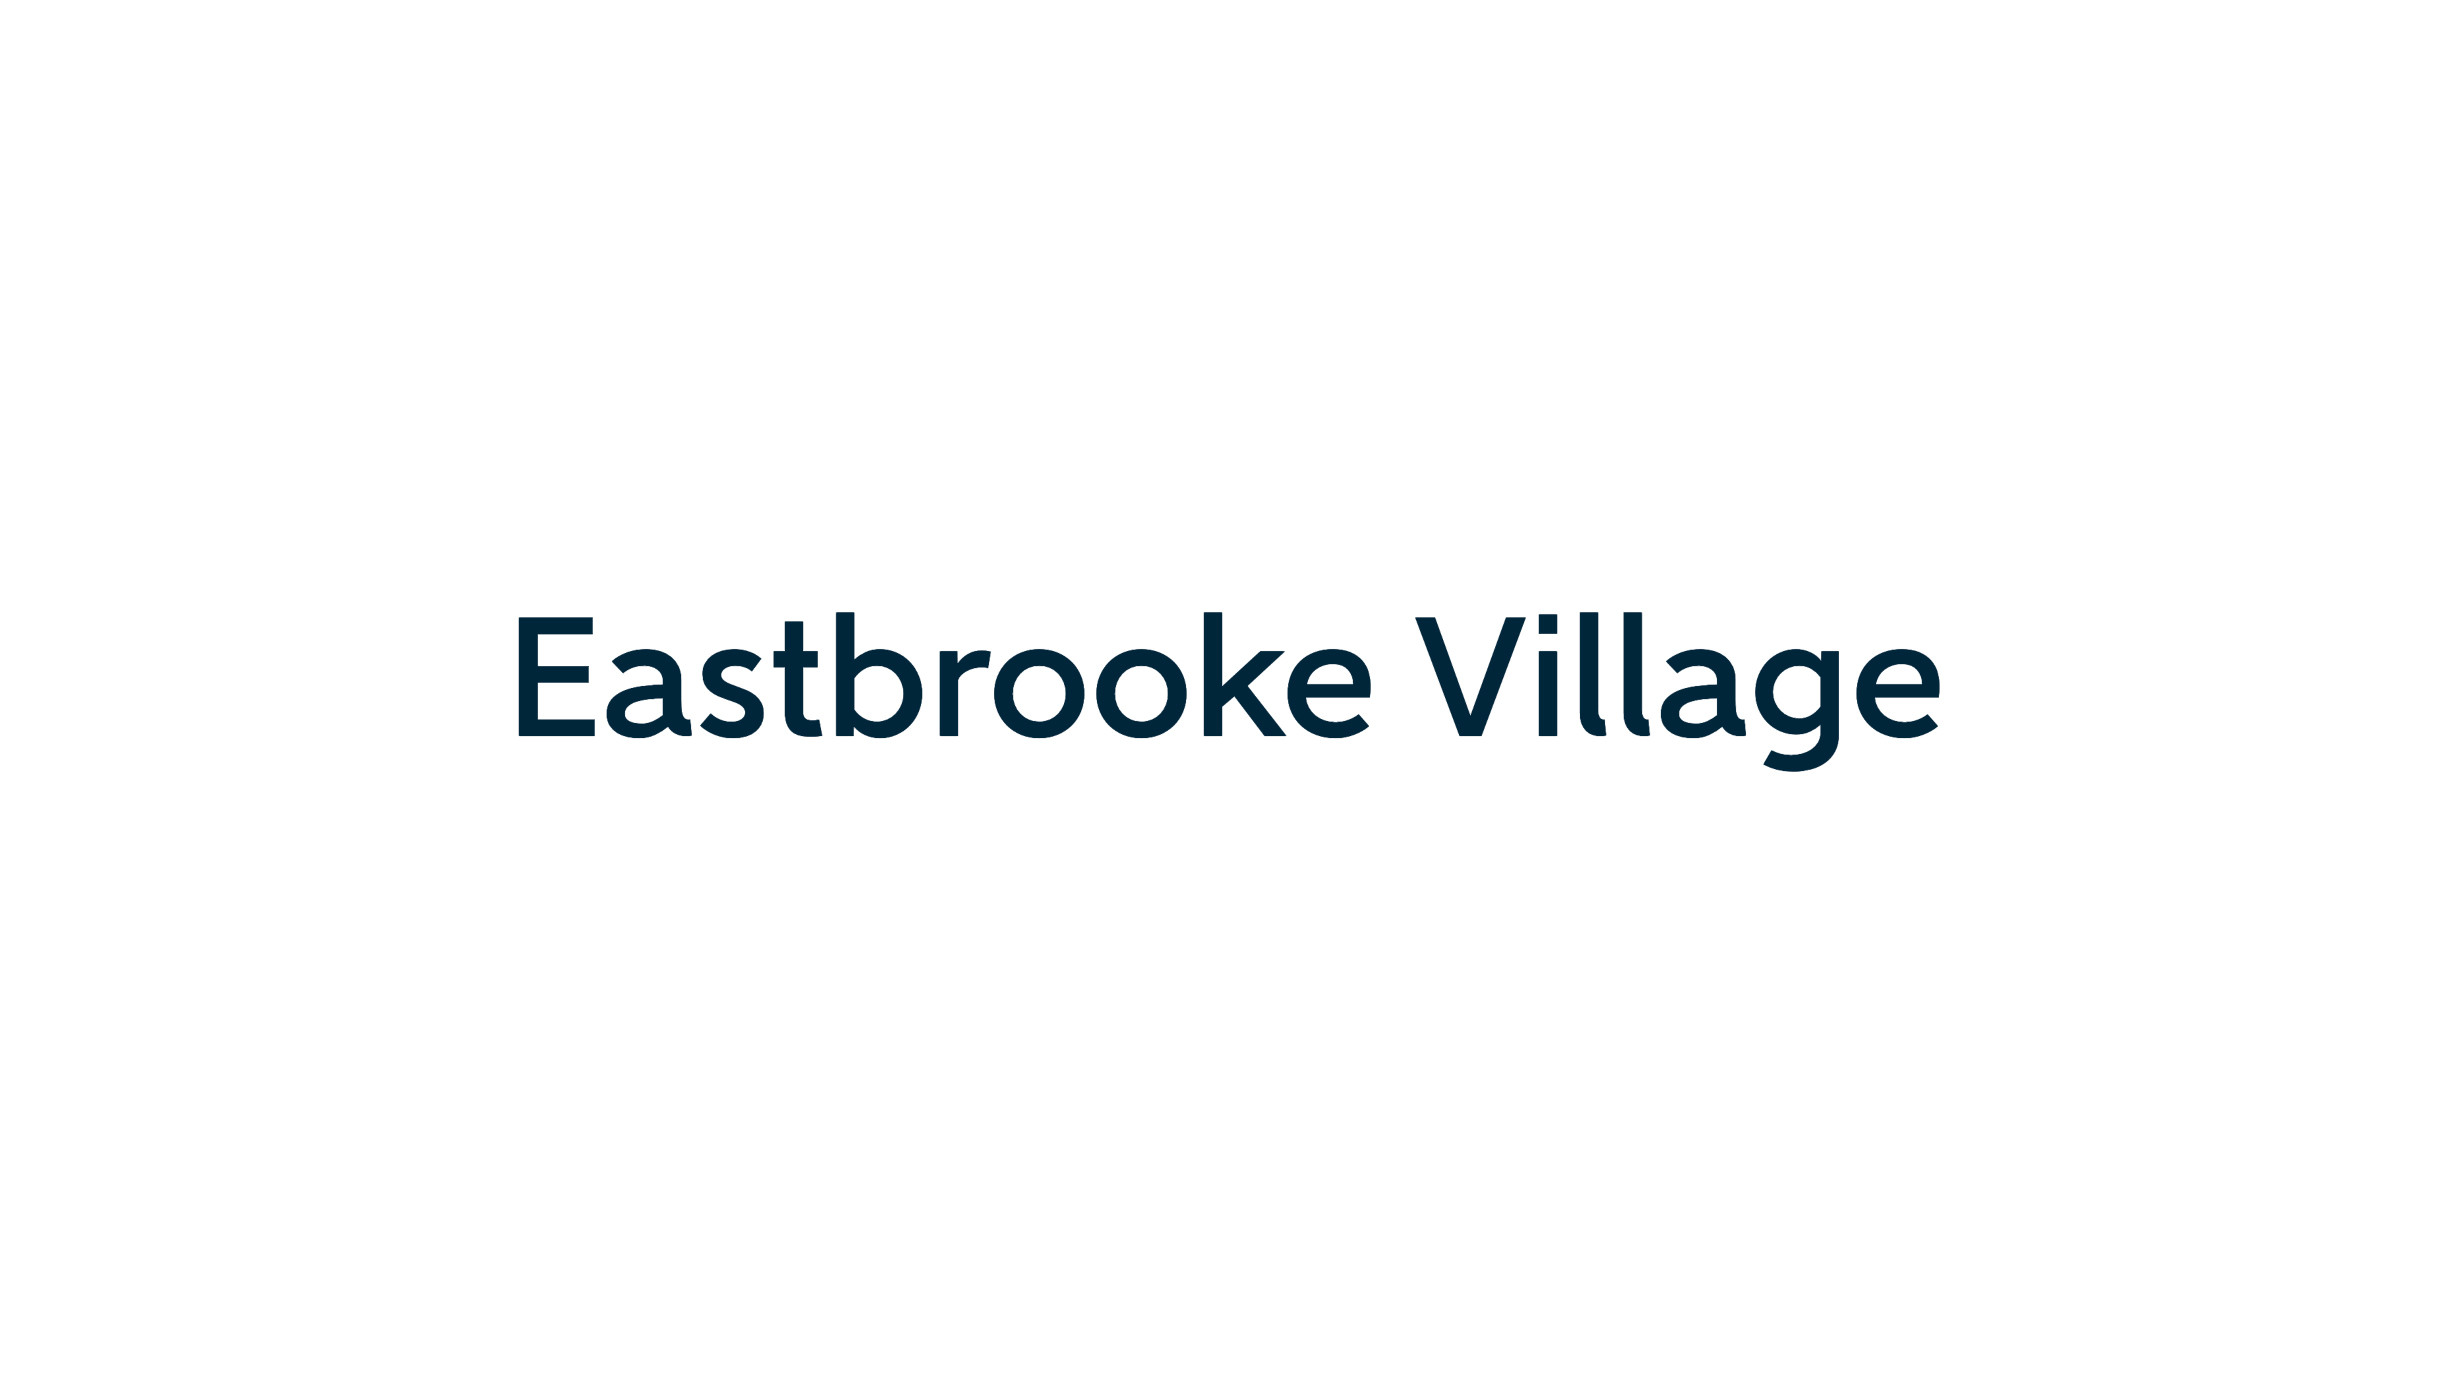 Eastbrooke Village development by Bellway in Barking Riverside IG11